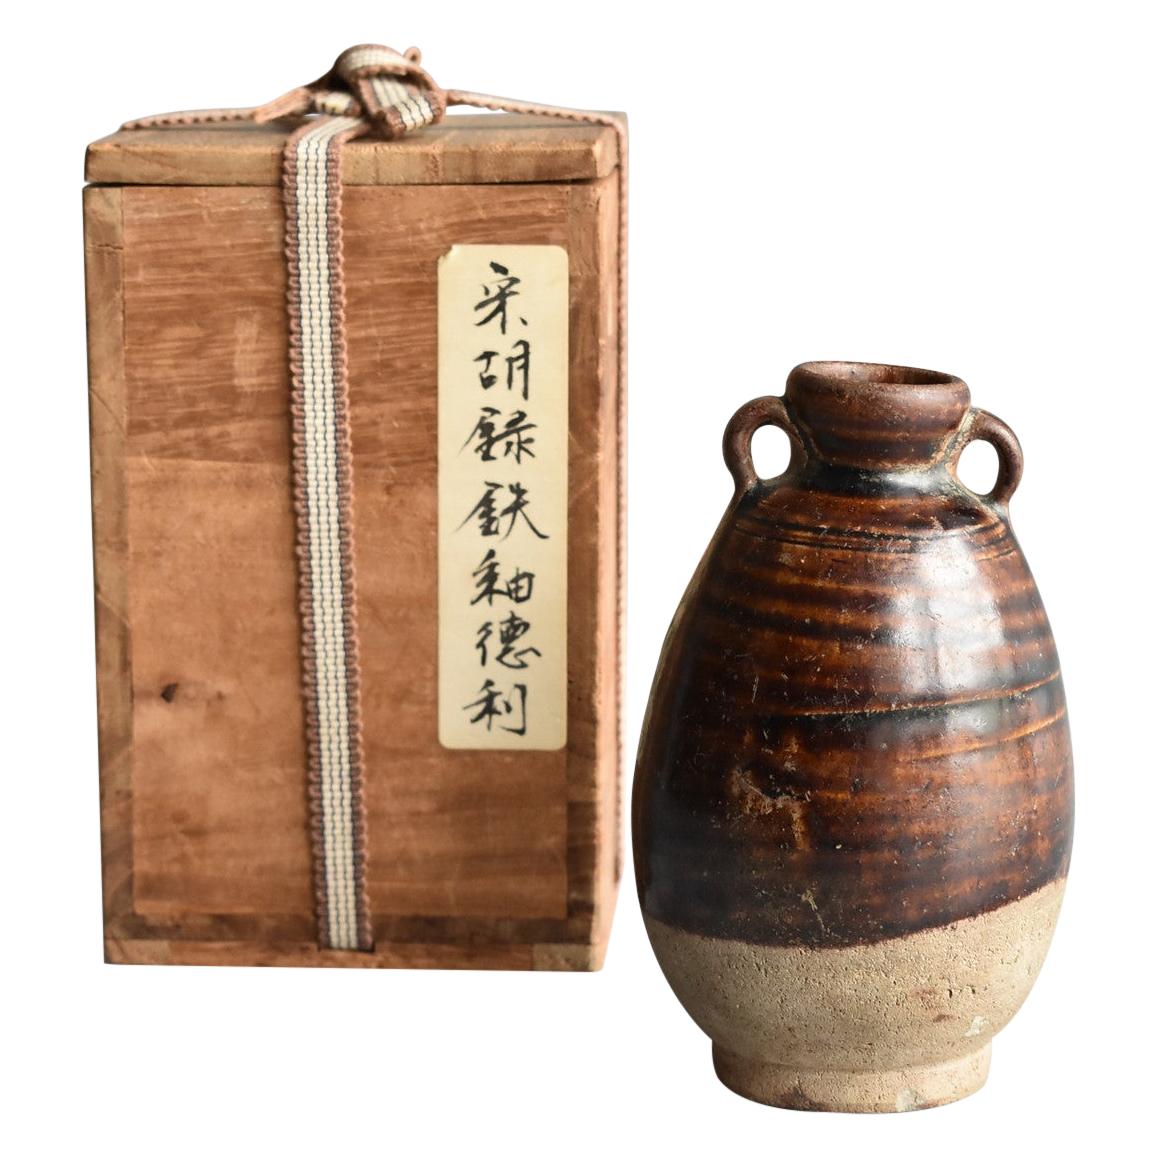 Thai Antique Bottle 15th Century / Old Vase / Southeast Asian Antiques